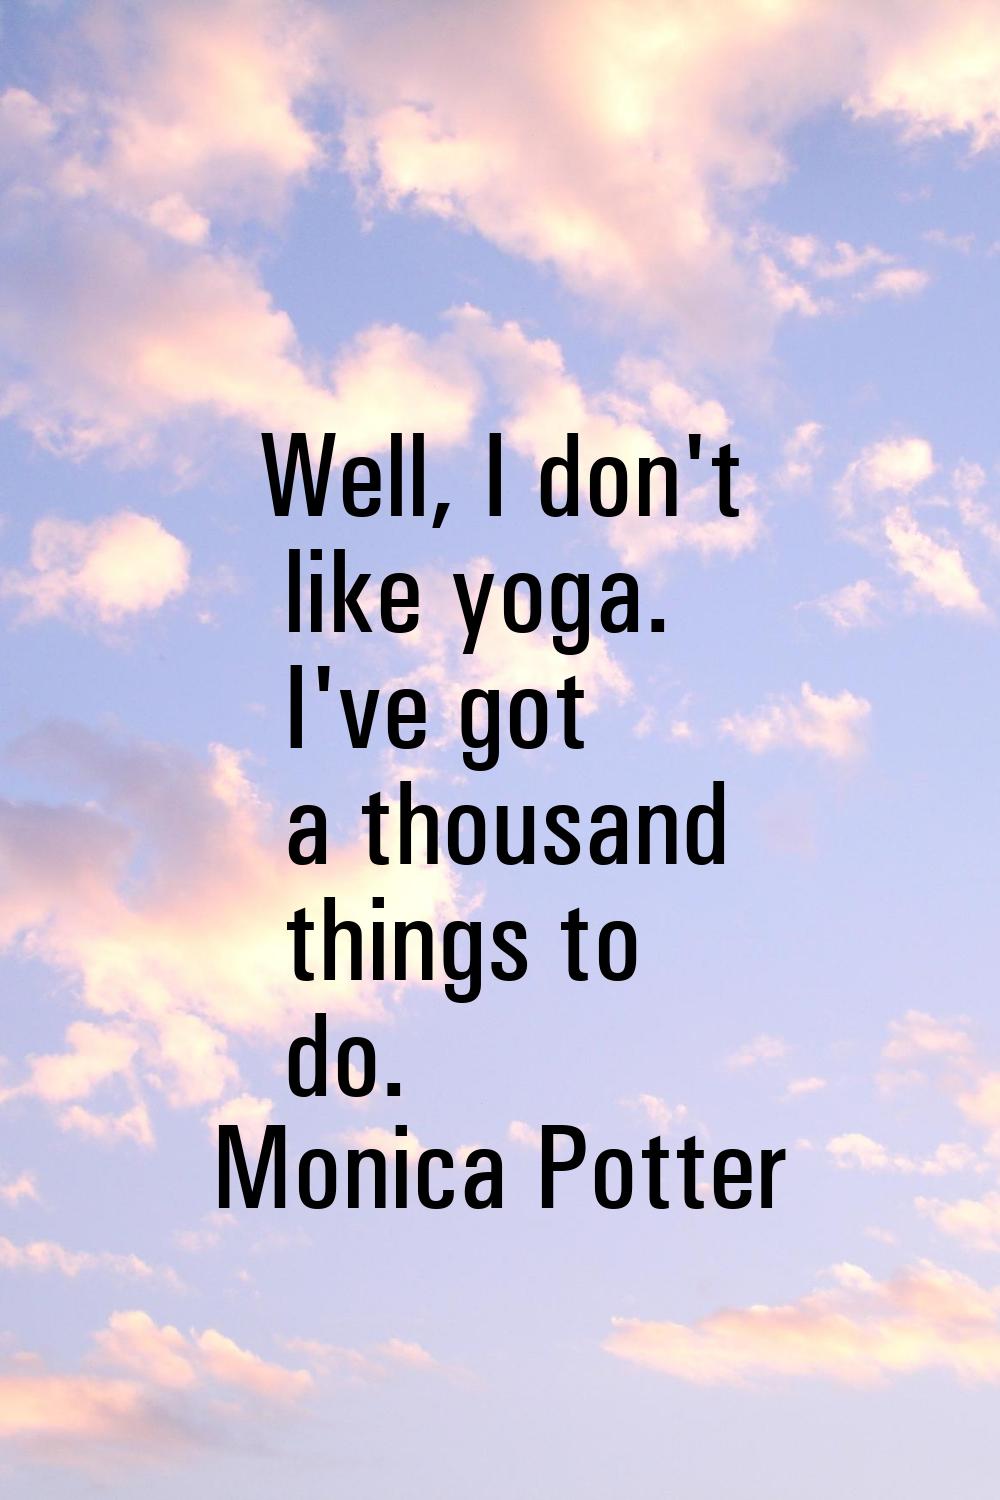 Well, I don't like yoga. I've got a thousand things to do.